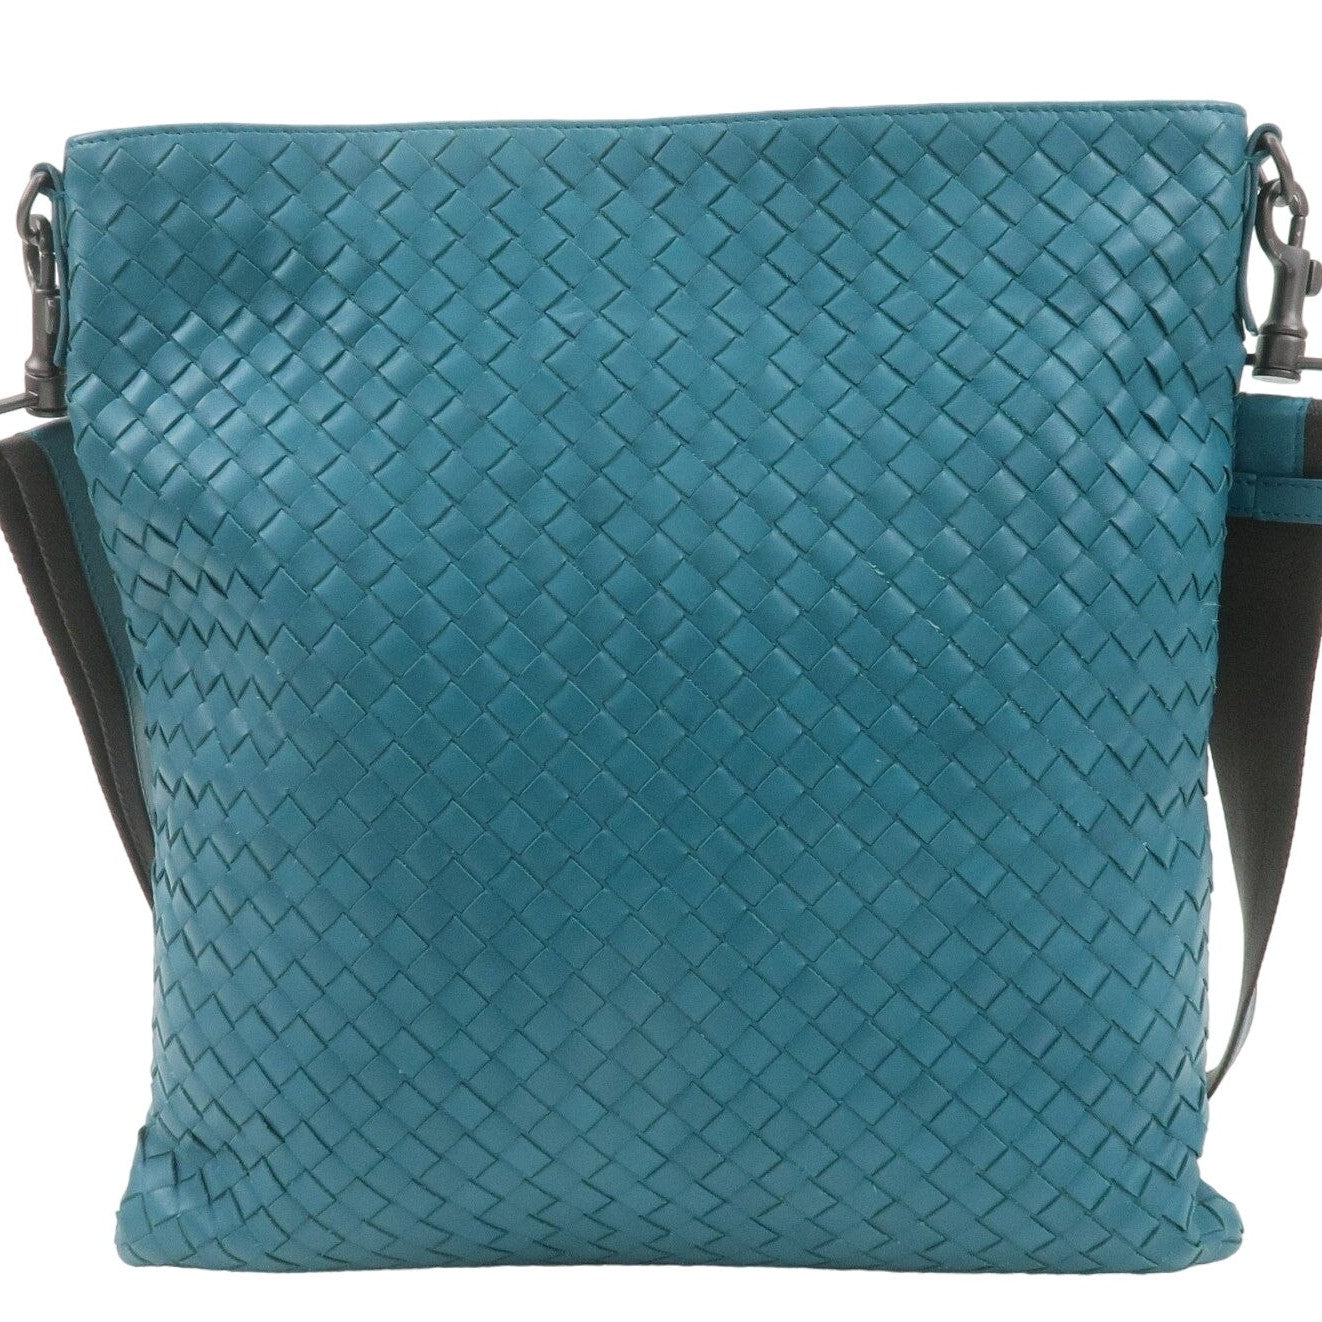 Authentic BOTTEGA VENETA Intrecciato Leather Shoulder Bag Turquoise